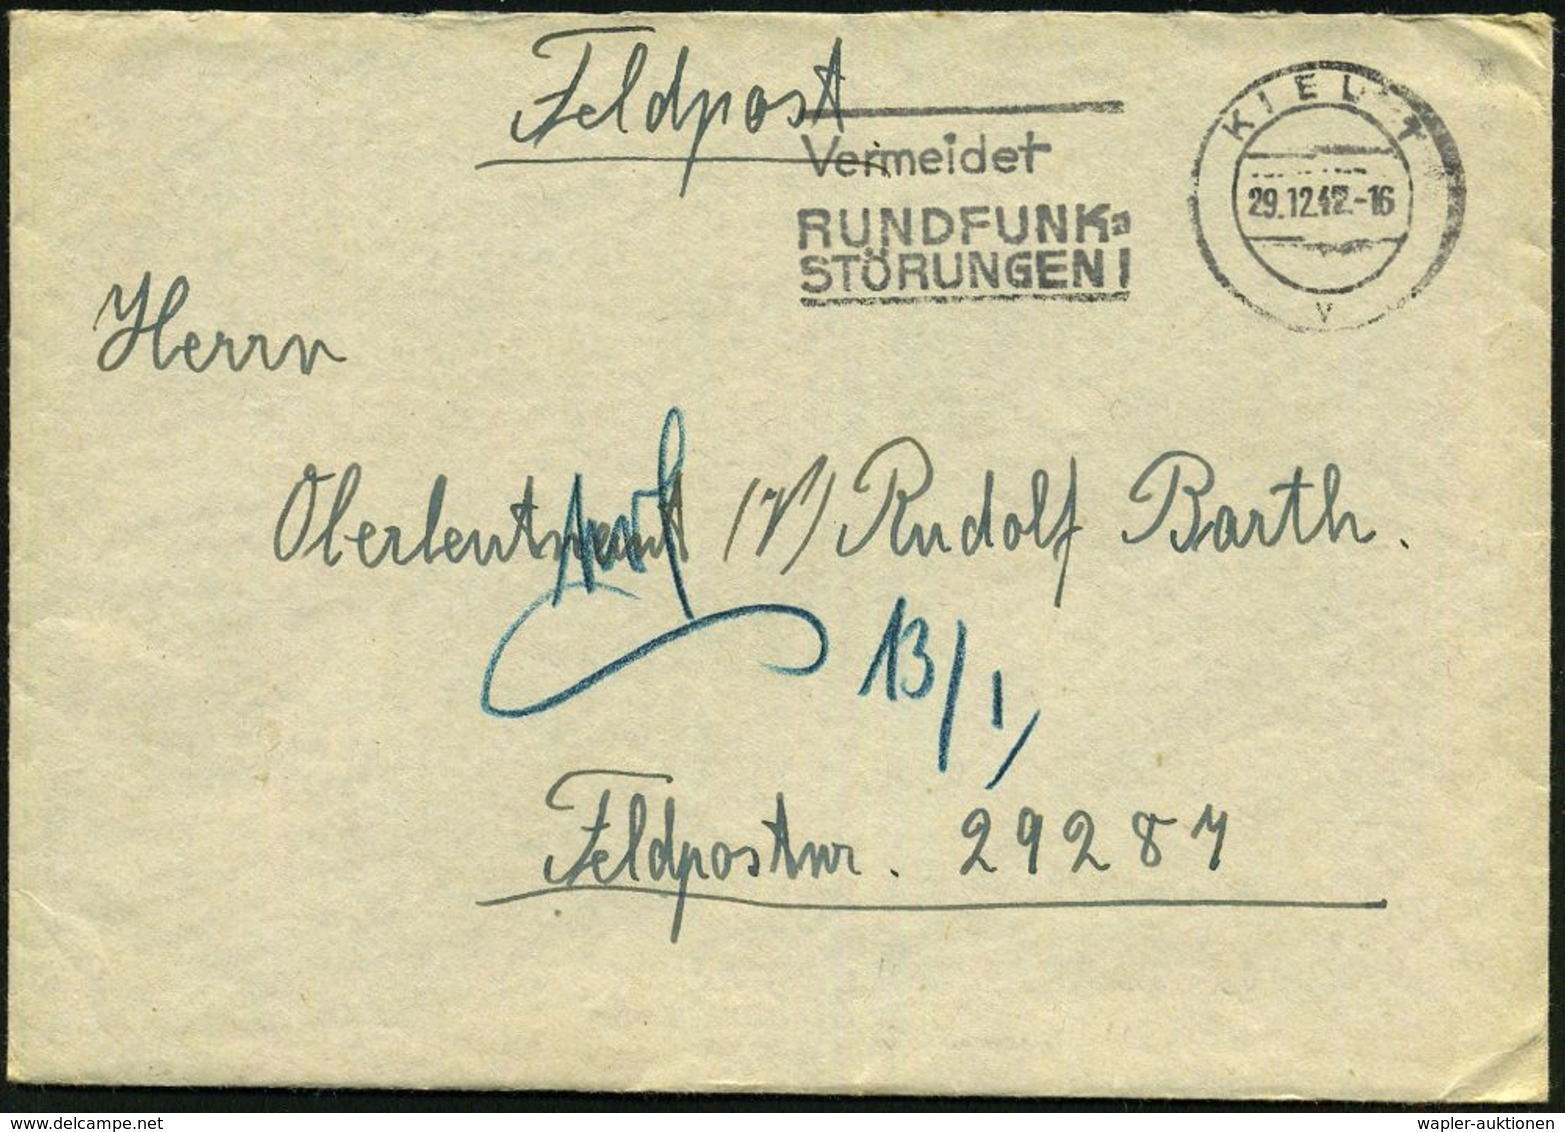 KIEL 1/ V/ Vermeidet/ RUNDFUNK-/ STÖRUNGEN! 1942 (29.12.) MWSt Auf Feldpost-Bf. An Feldpost-Nr. 29287 = Marine-Stamm-Abt - Schiffahrt